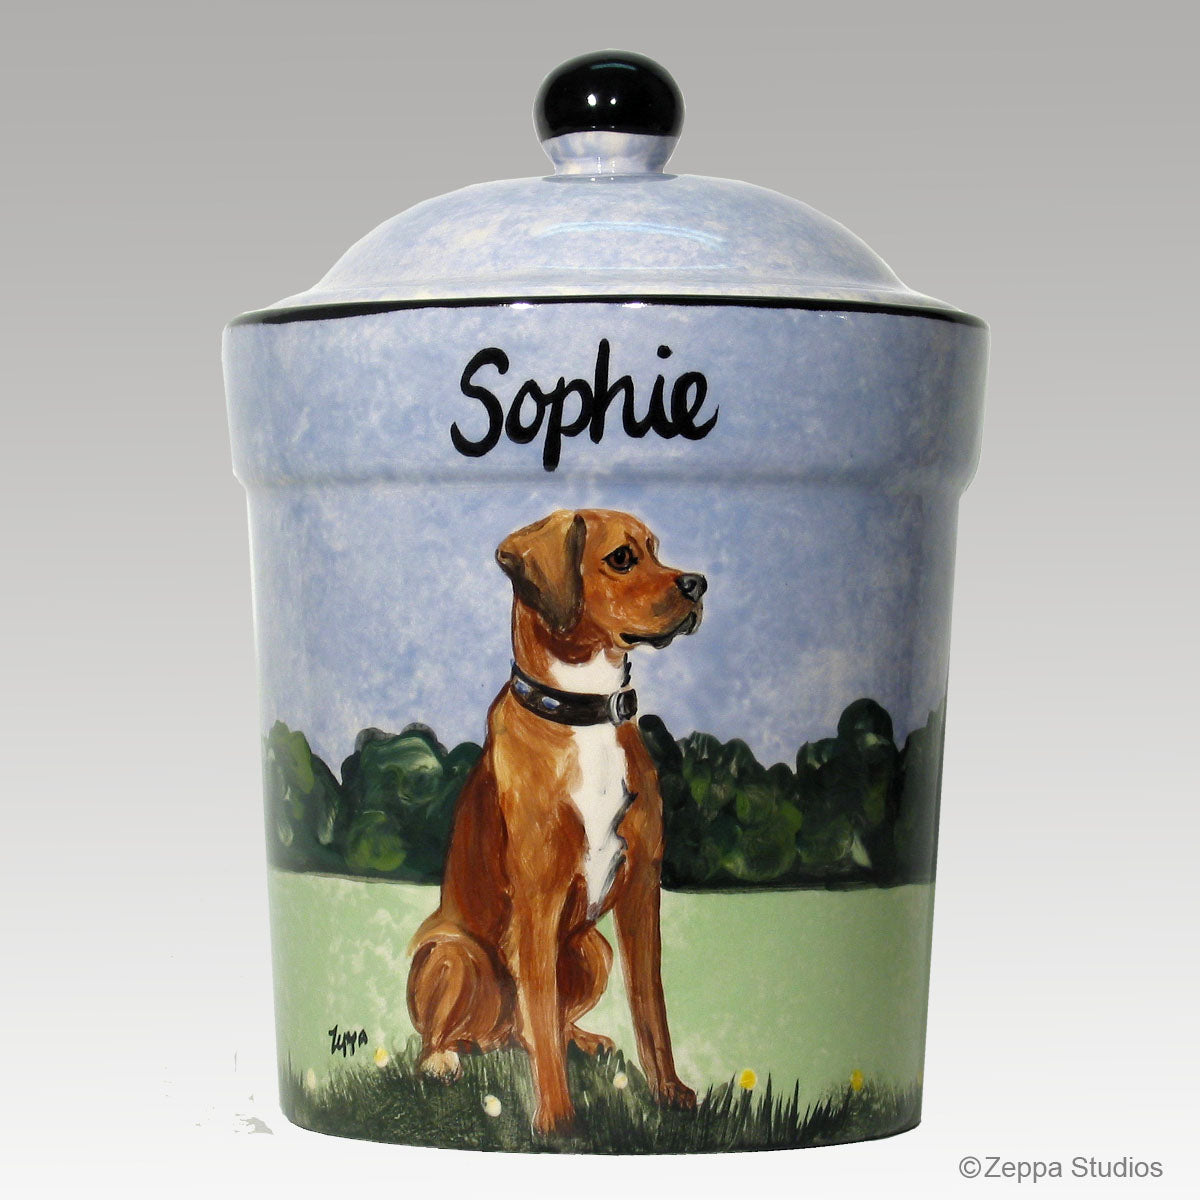 Custom Hand Painted Ceramic Treat Jar, "Sophie" by Zeppa Studios